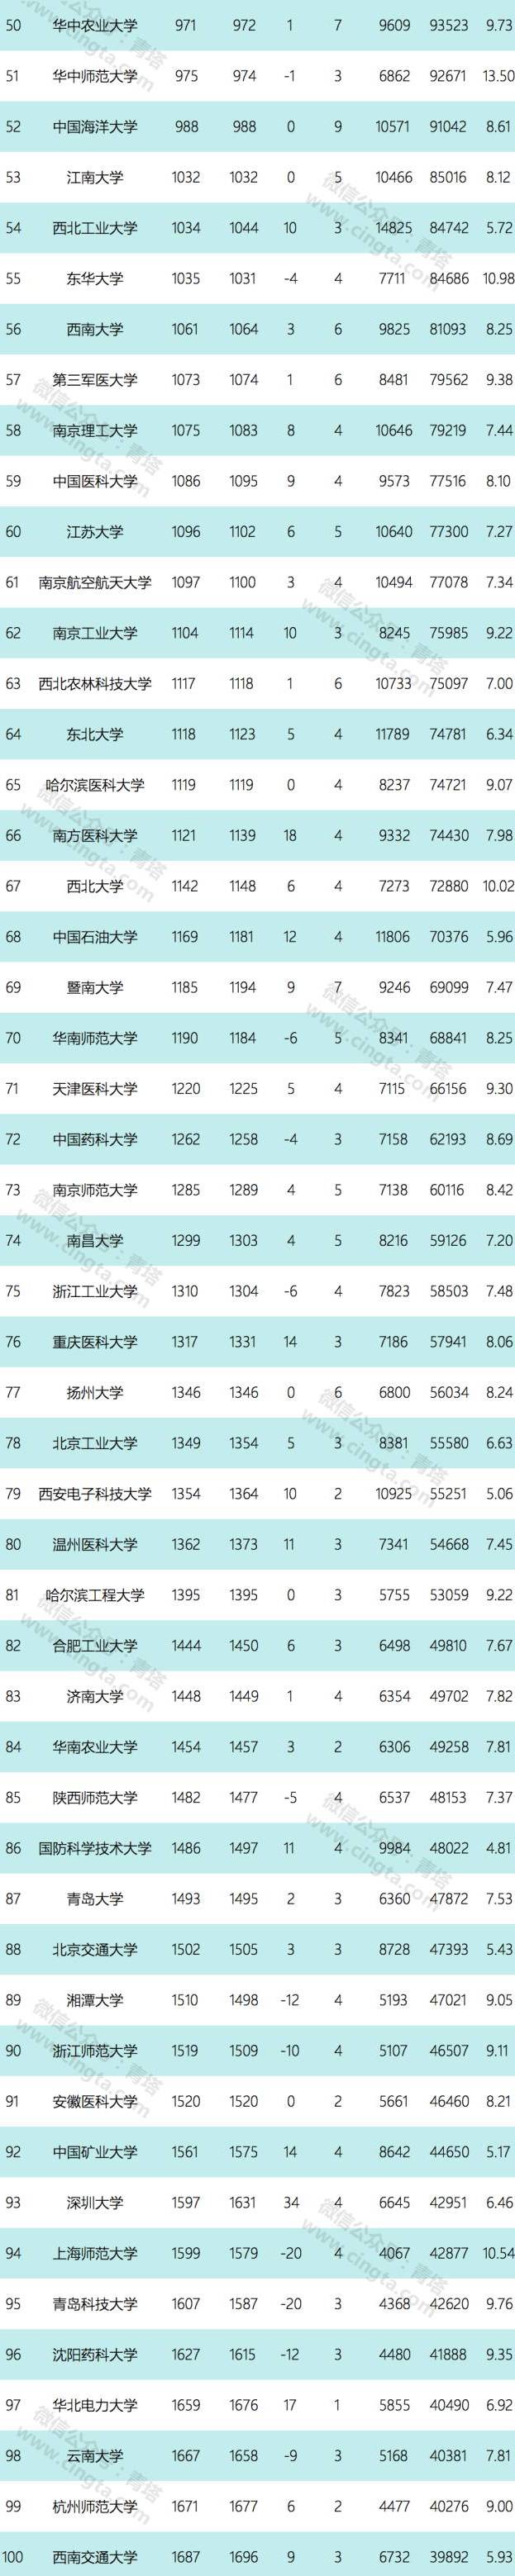 2017年7月最新ESI中国大学综合排名百强出炉